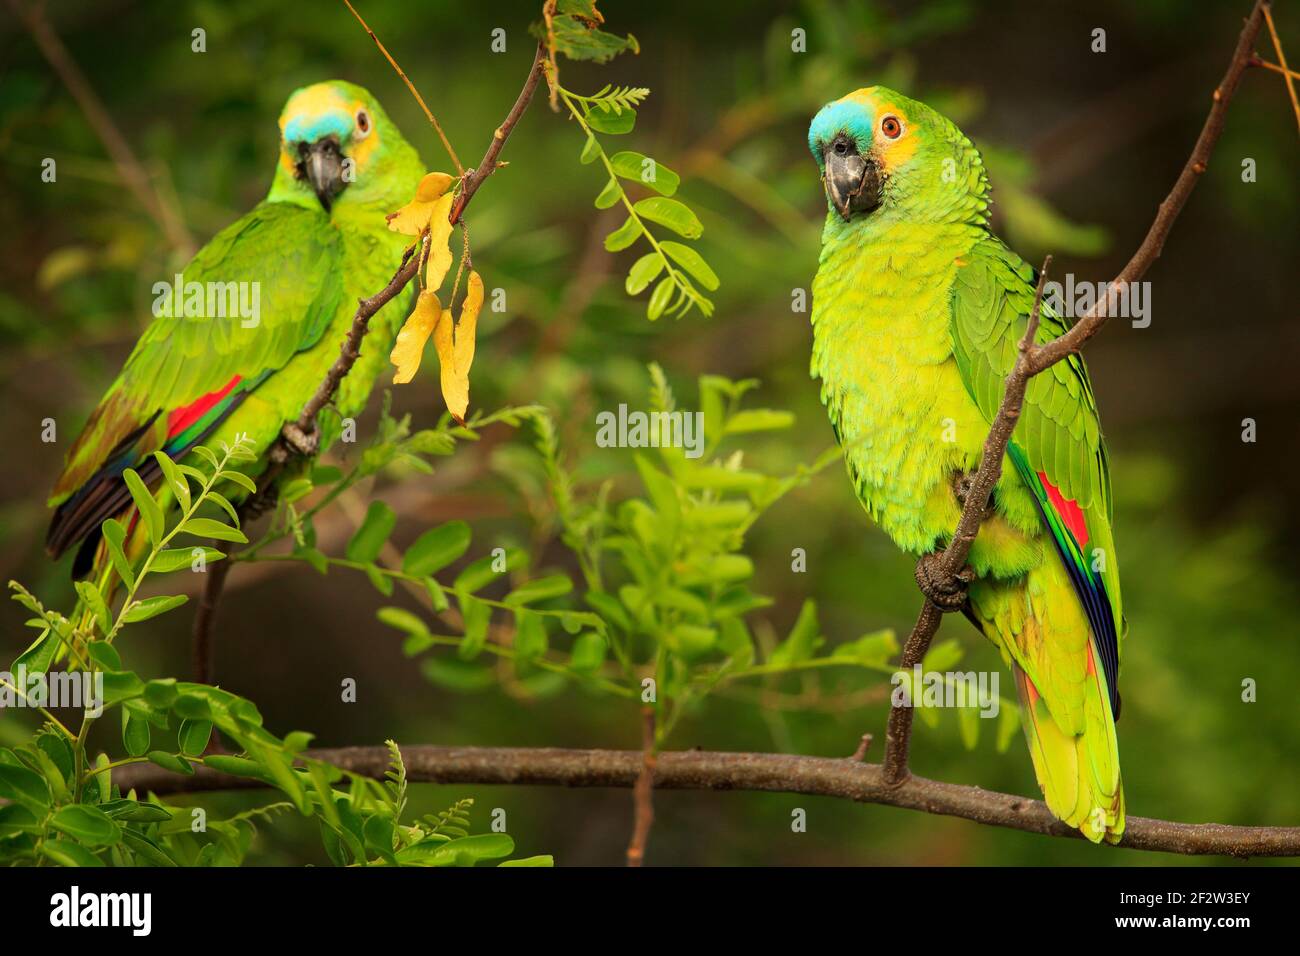 Zwei Papageien, Razil im Lebensraum. amazonas mit türkisfarbener Fassade,  Amazona aestiva, Portrait eines hellgrünen Papagei mit rotem Kopf, Costa  Rica. Flugvogel Stockfotografie - Alamy